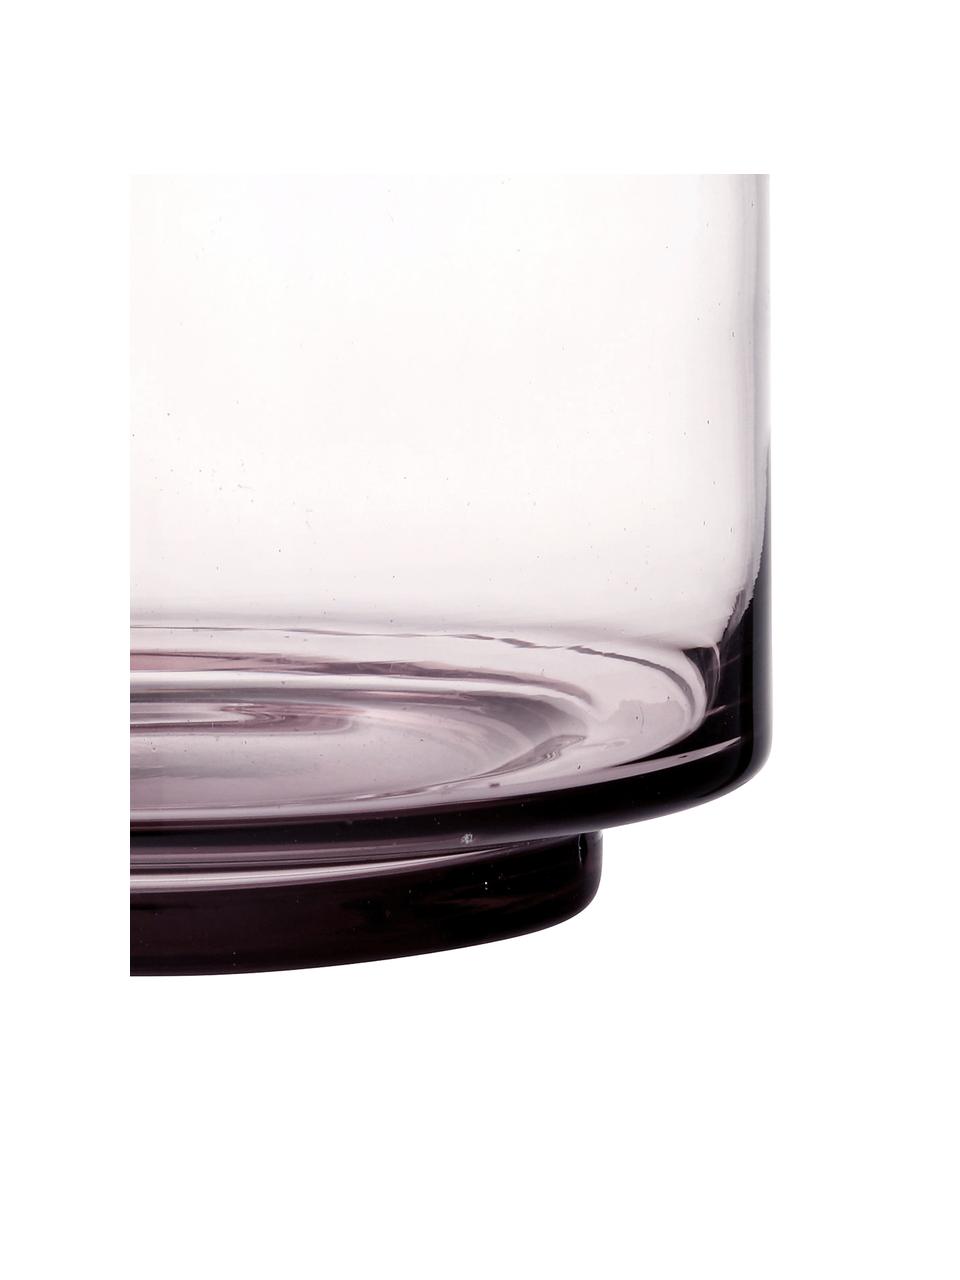 Jarrón de vidrio soplado Hedria, pequeño, Vidrio, Rosa, transparente, Ø 18 x Al 16 cm